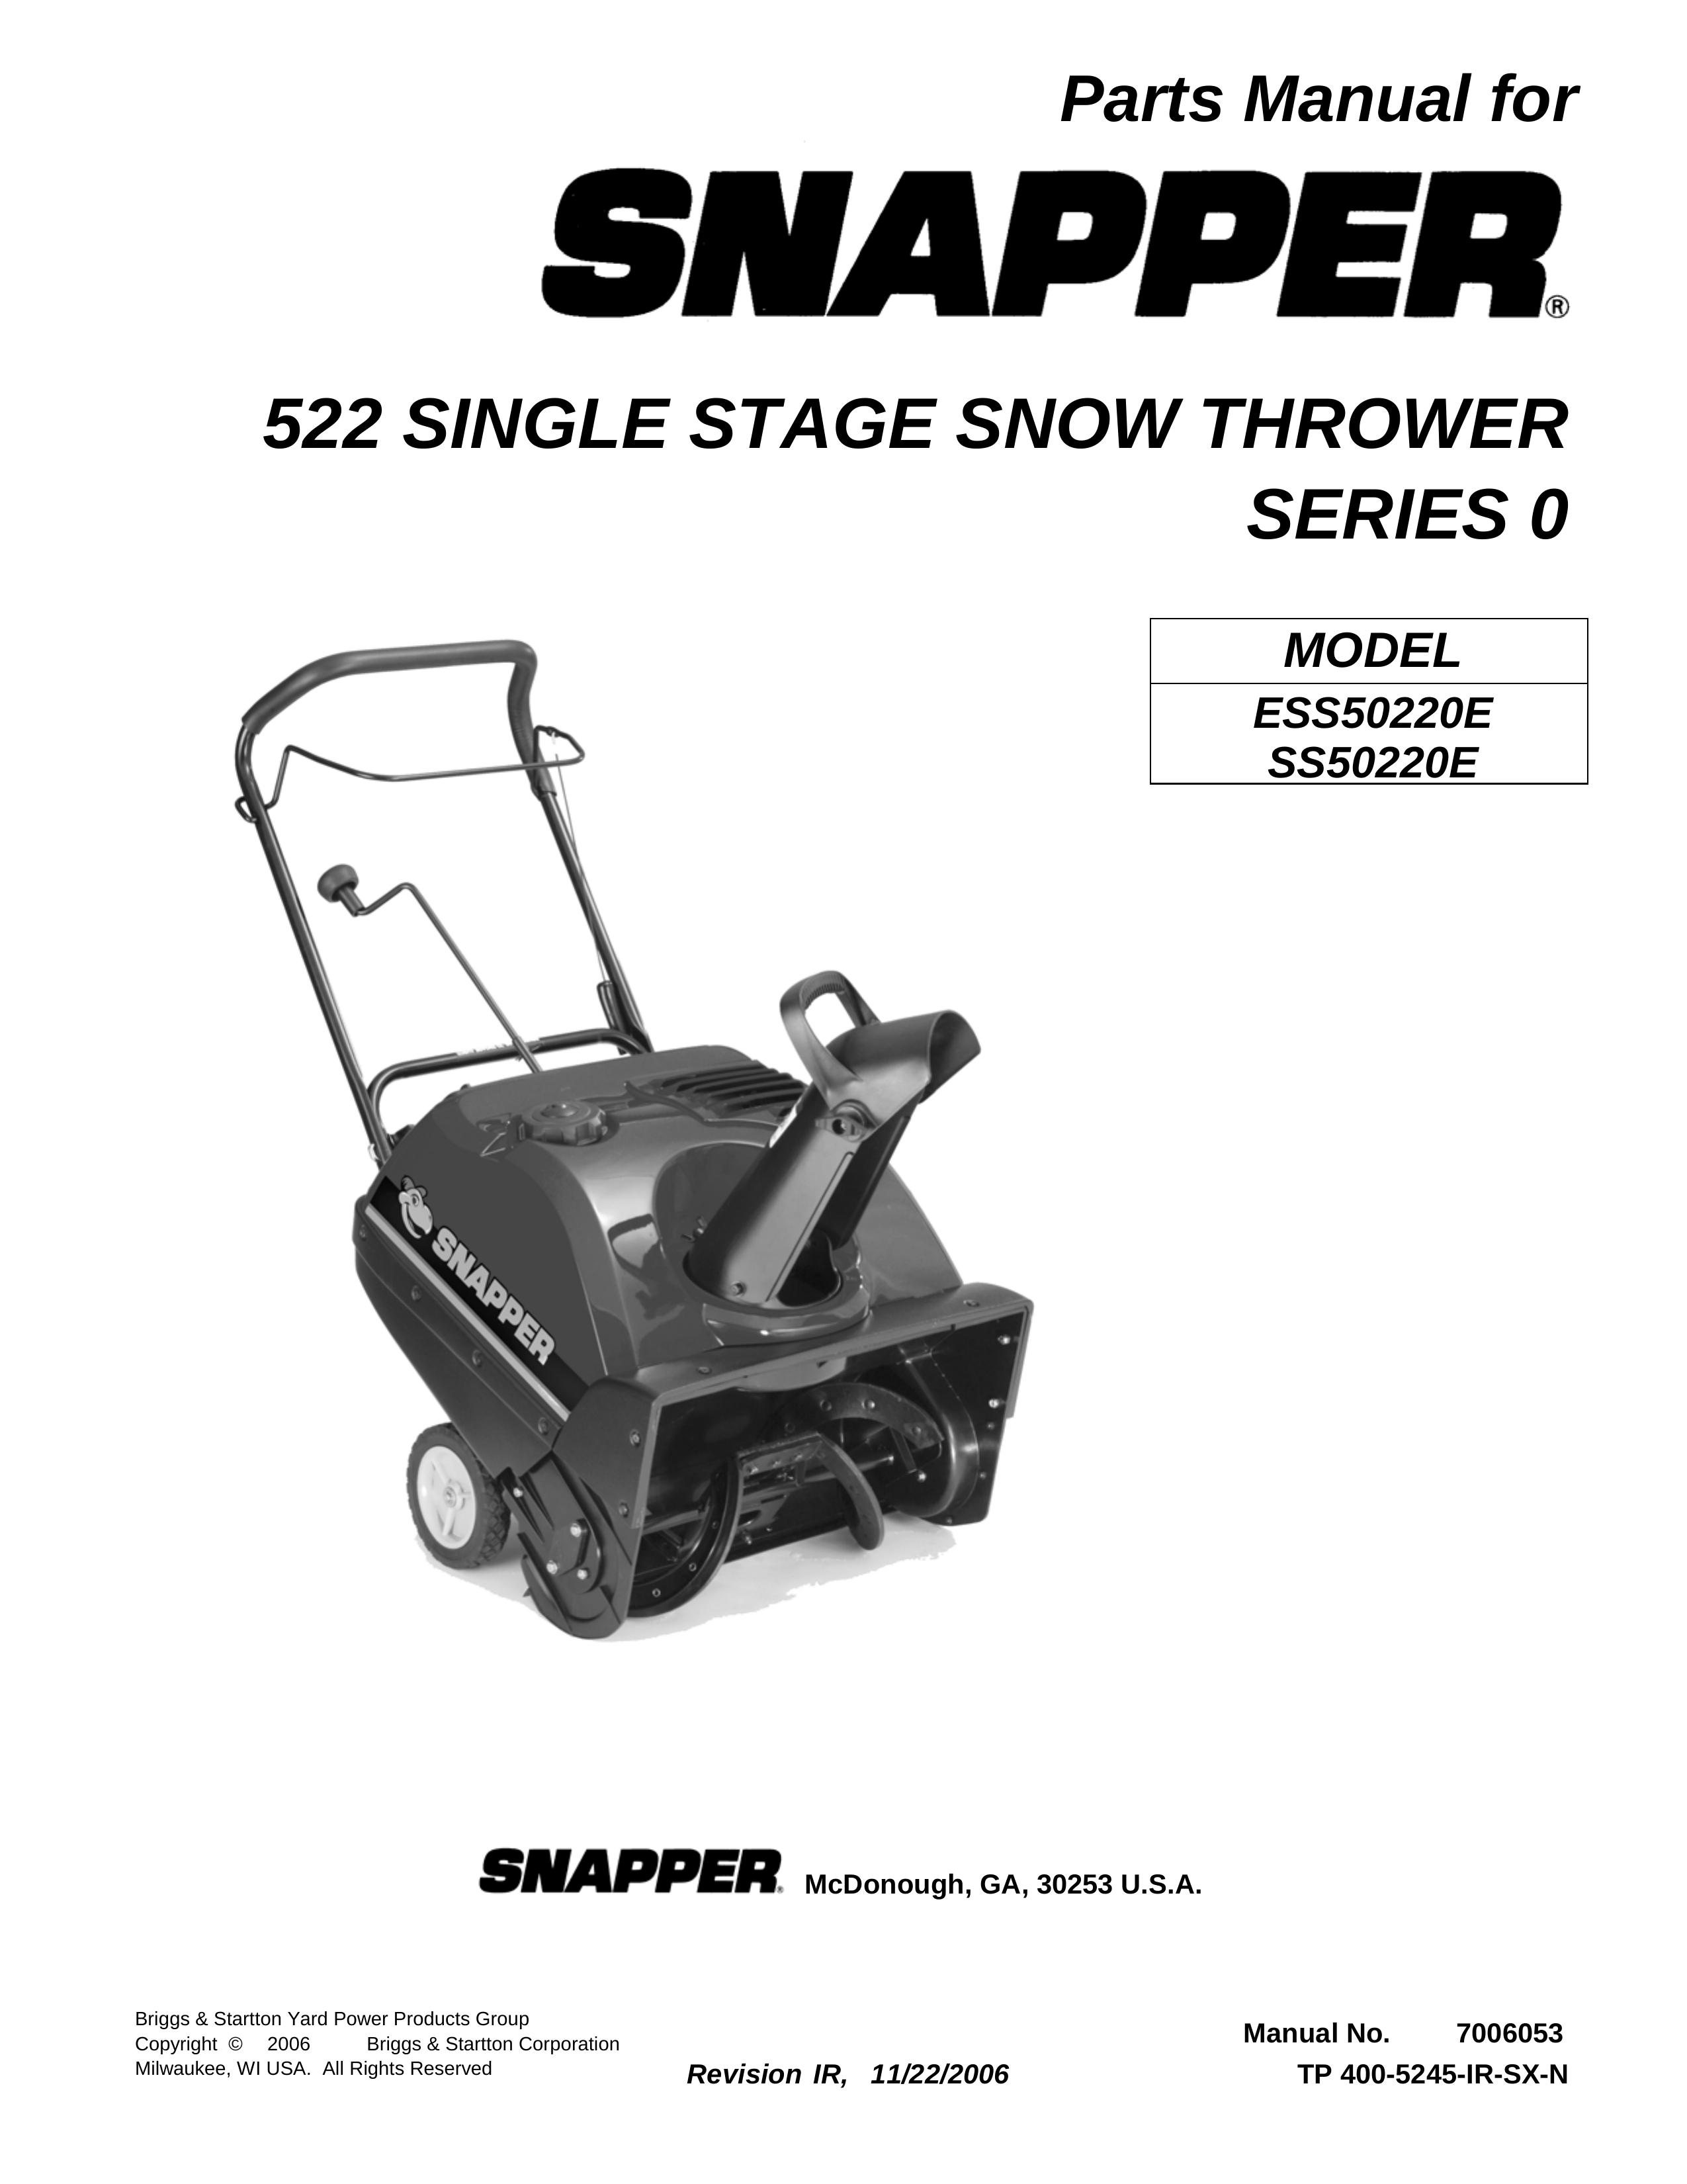 Briggs & Stratton SS50220E Snow Blower User Manual